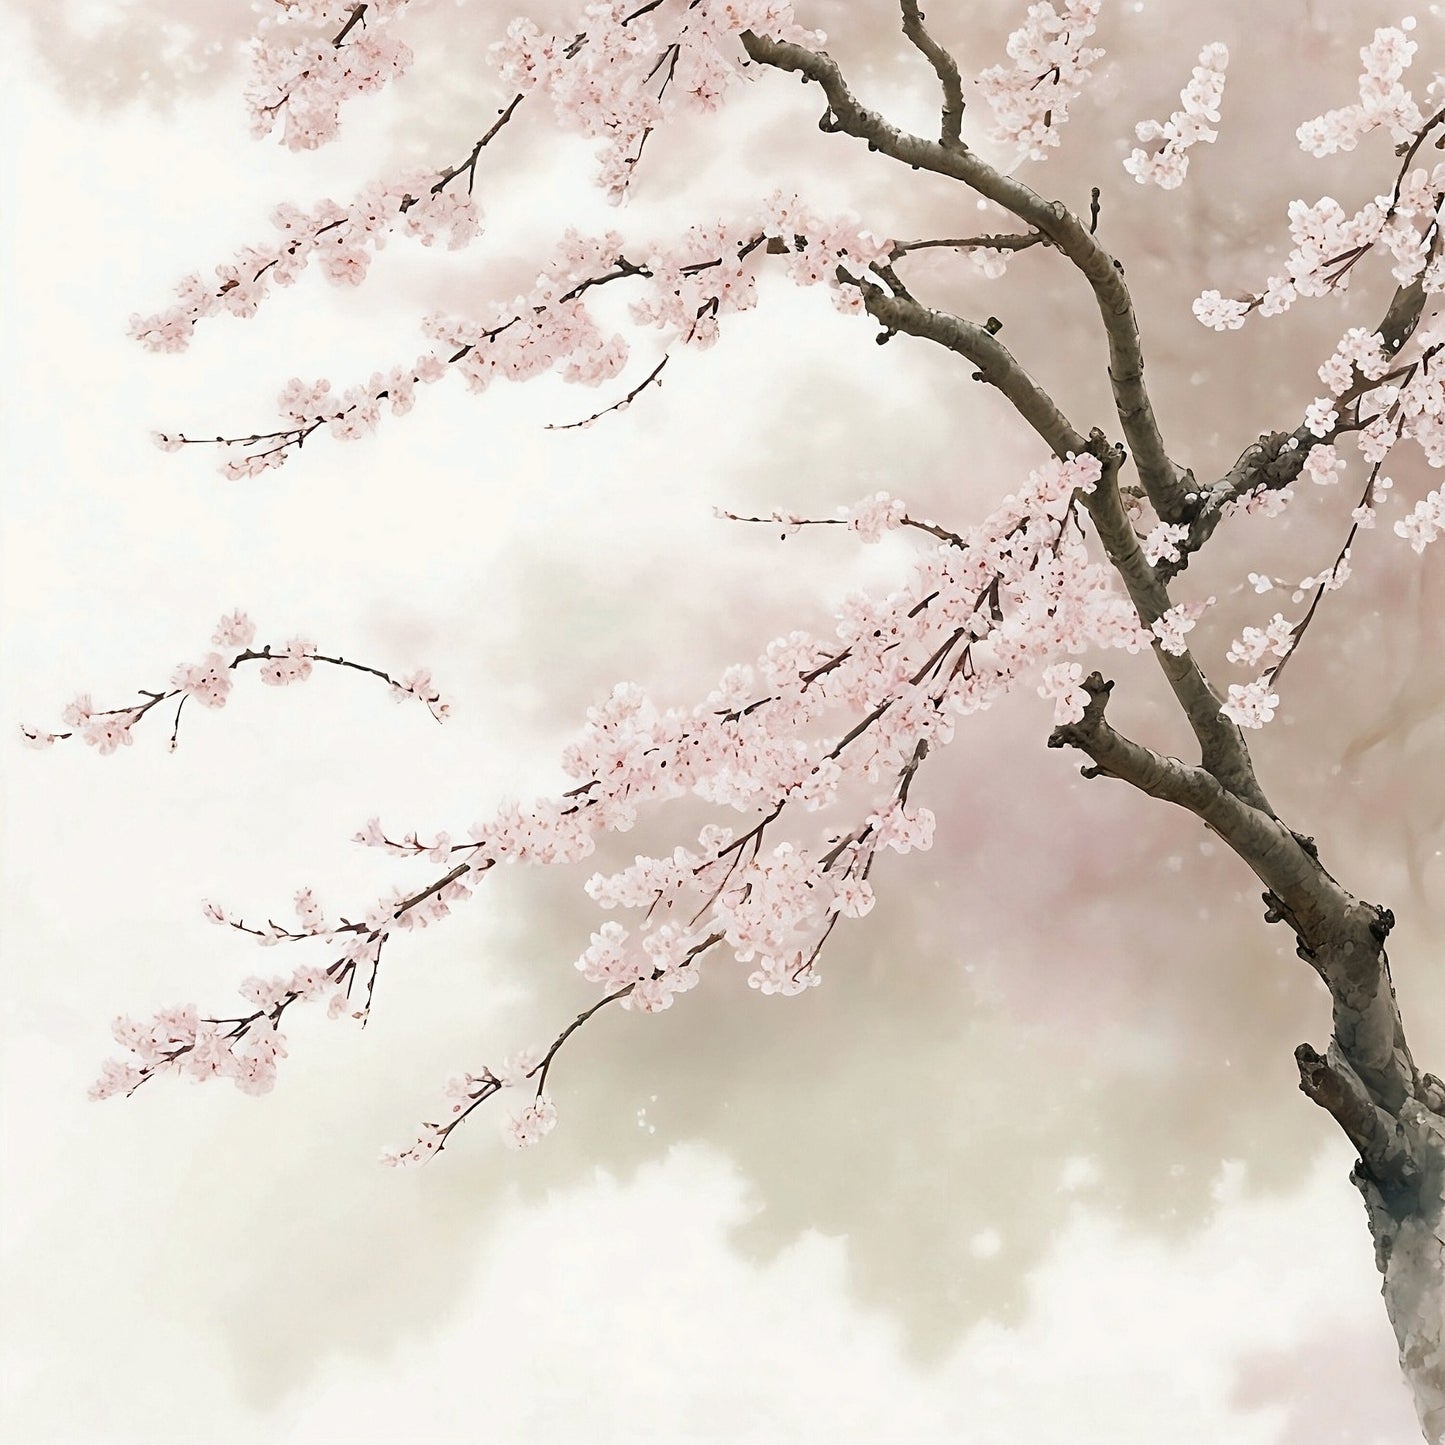 Blooming Sakura: Delicate Watercolor Artwork. Digital poster.